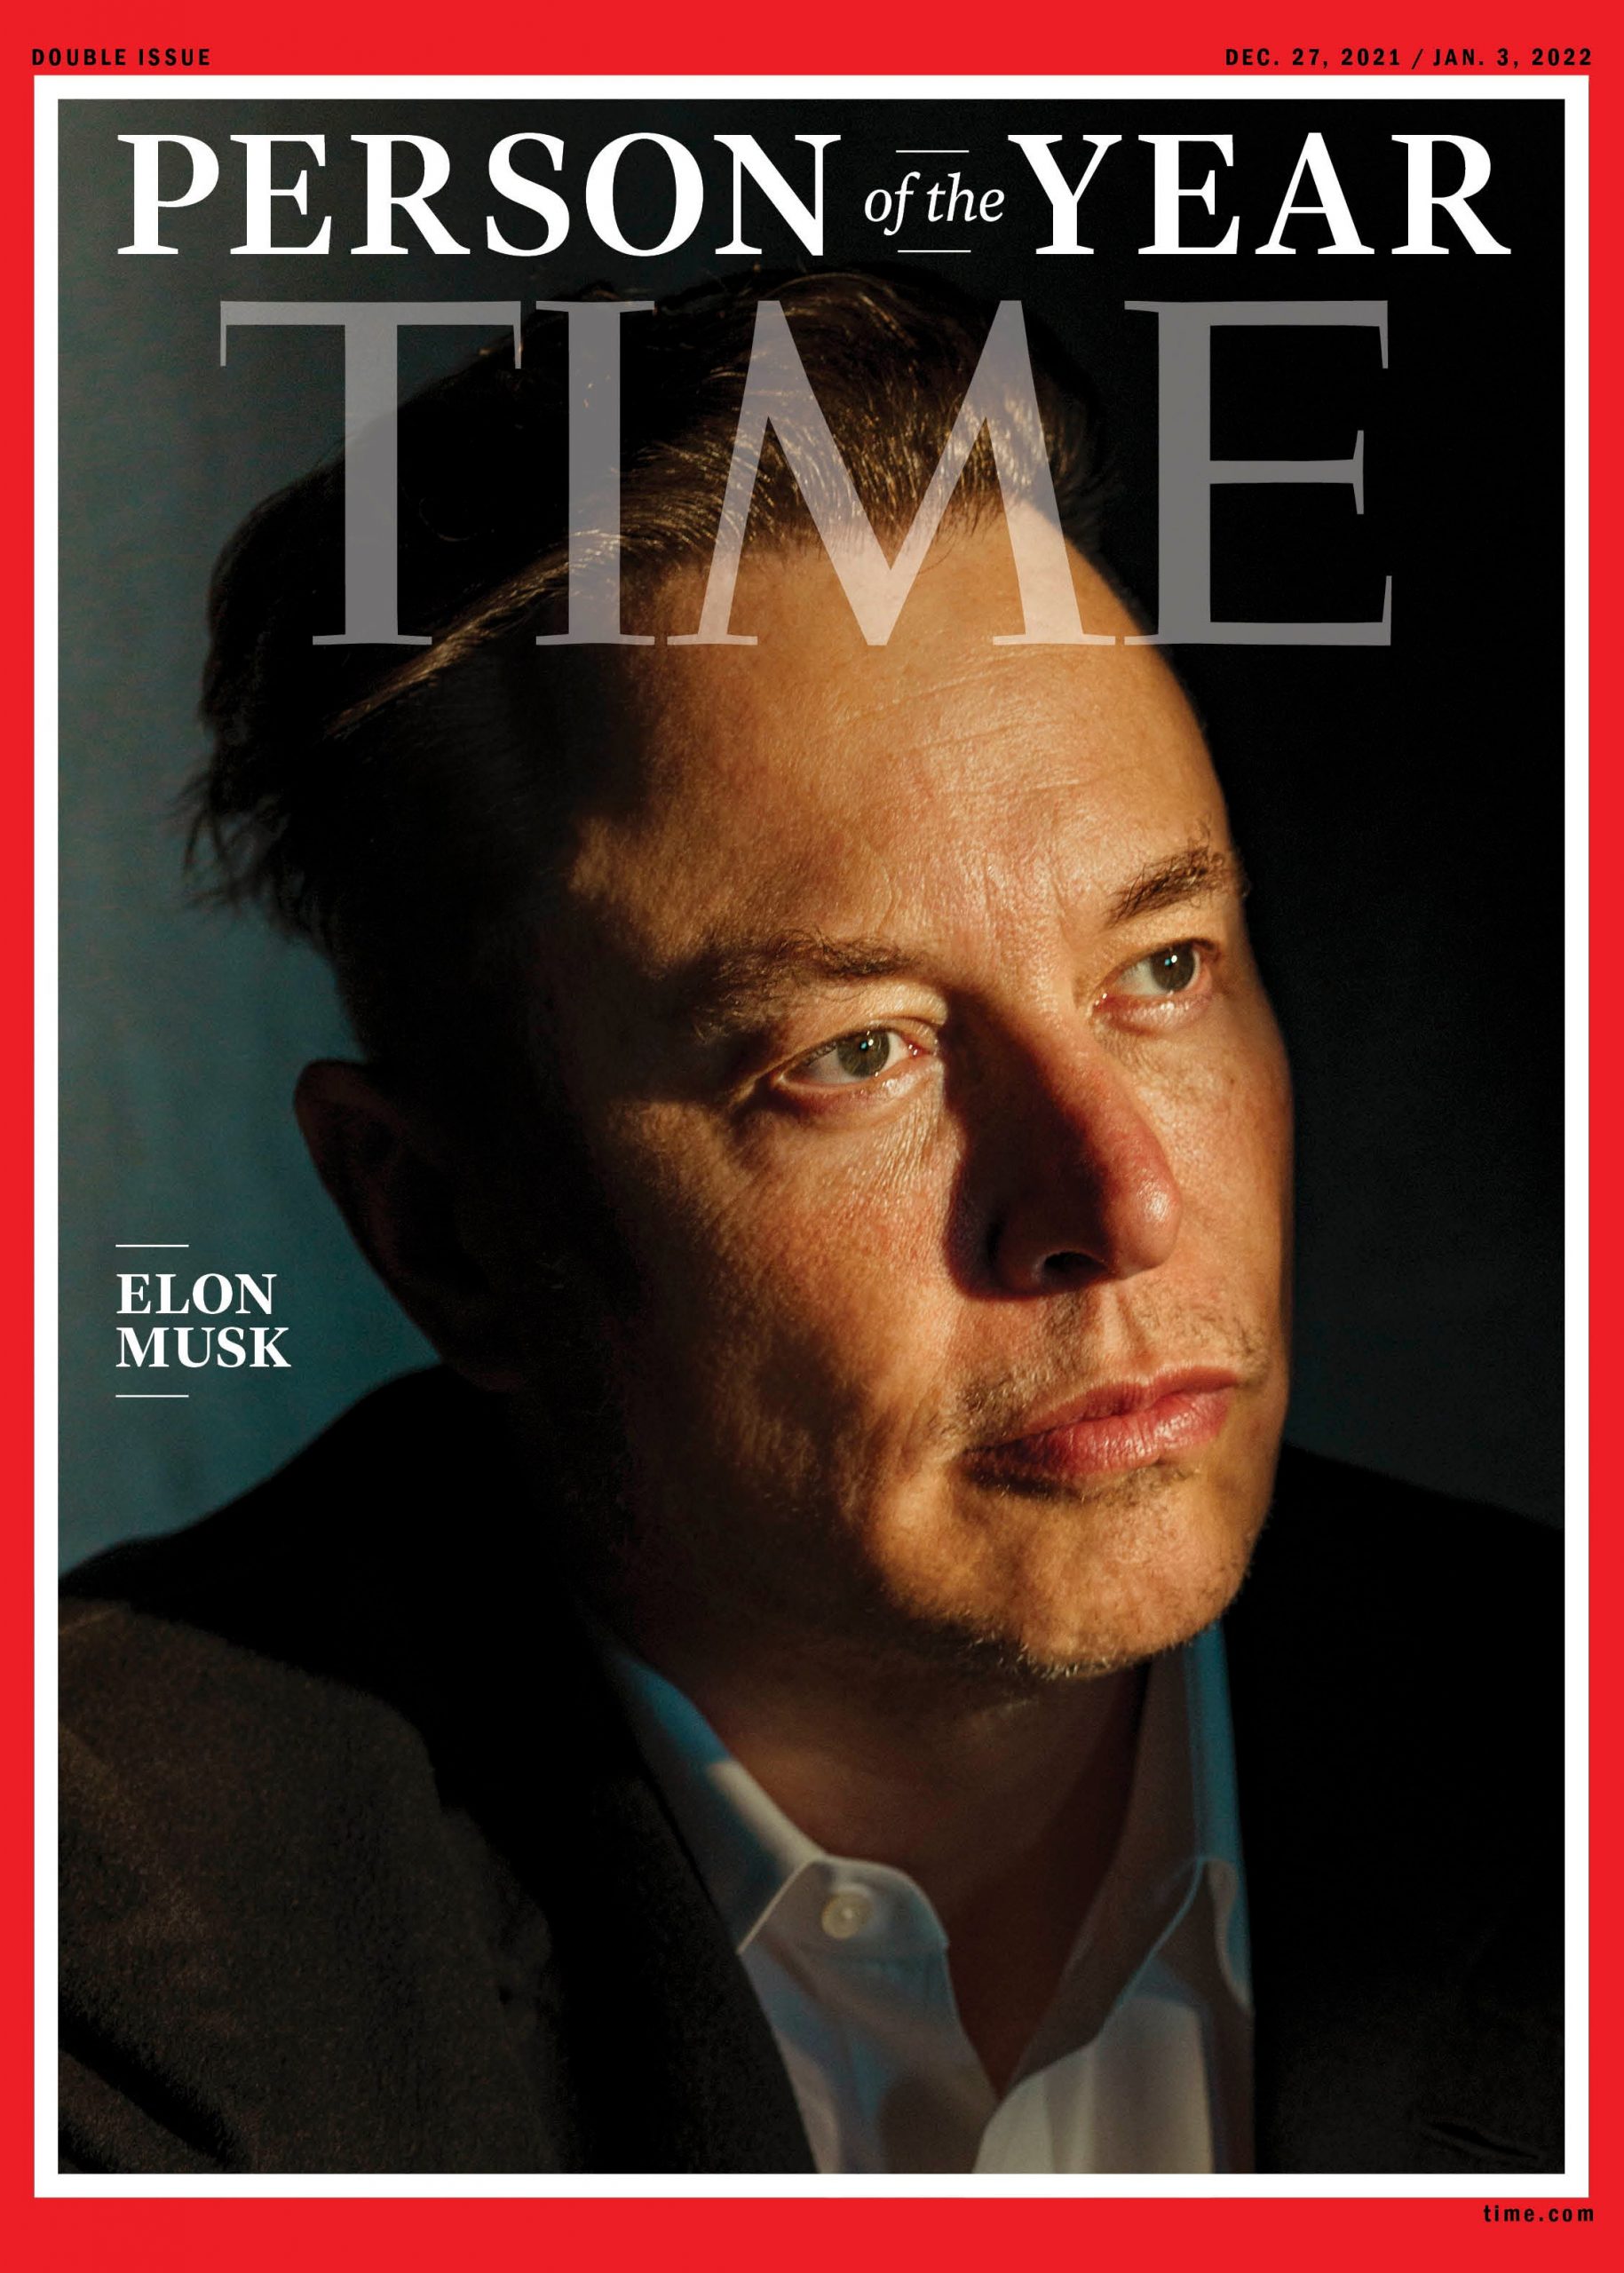 Elon Musk persona dell’anno per il Time: uno scettico sui vaccini è più meritevole di medici e scienziati?